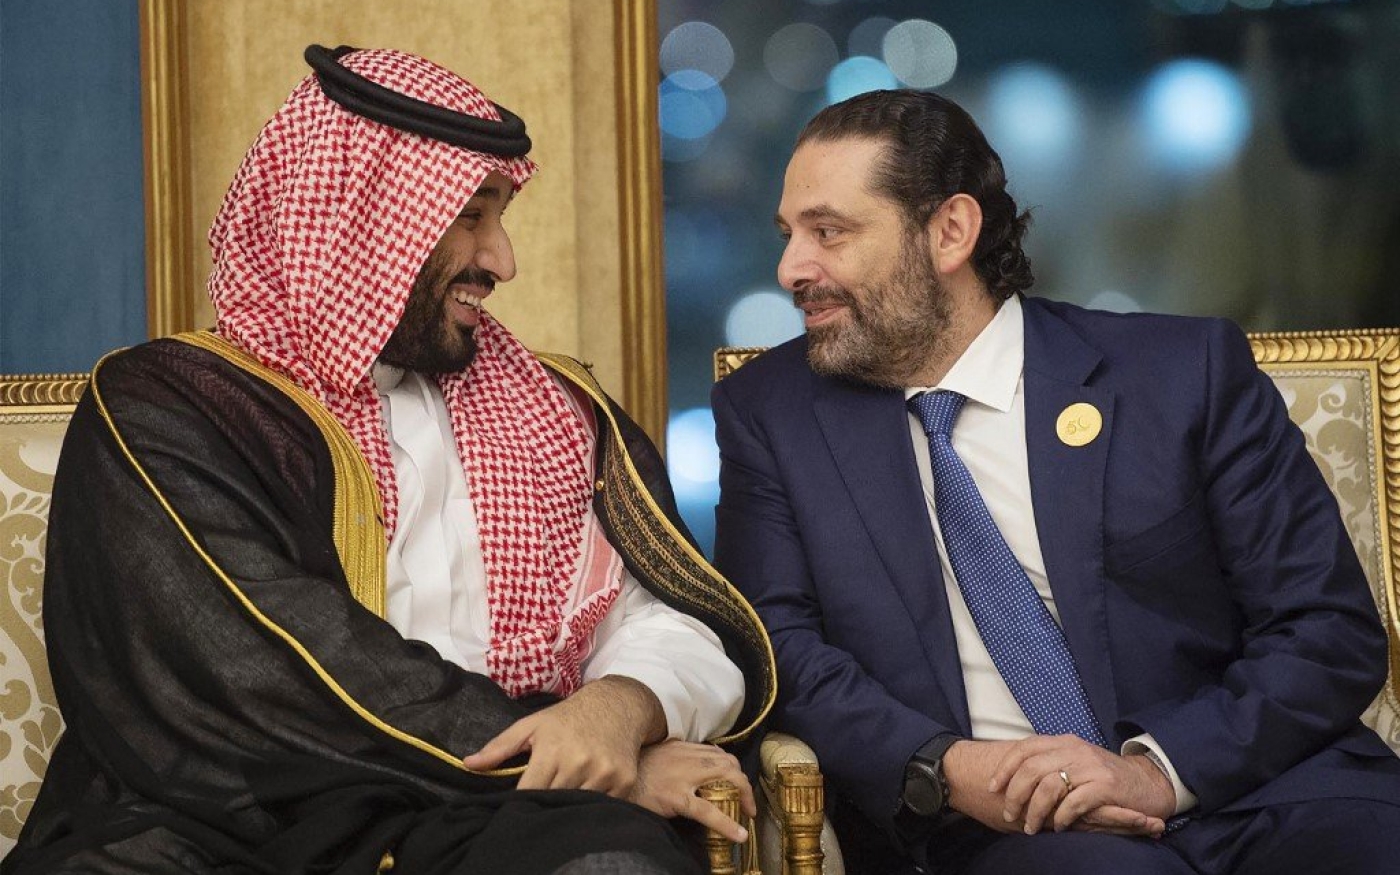 Le prince héritier saoudien Mohammed ben Salmane s’entretient avec le Premier ministre libanais Saad Hariri à La Mecque en 2019 (Bandar al-Jaloud/Palais royal saoudien/AFP)